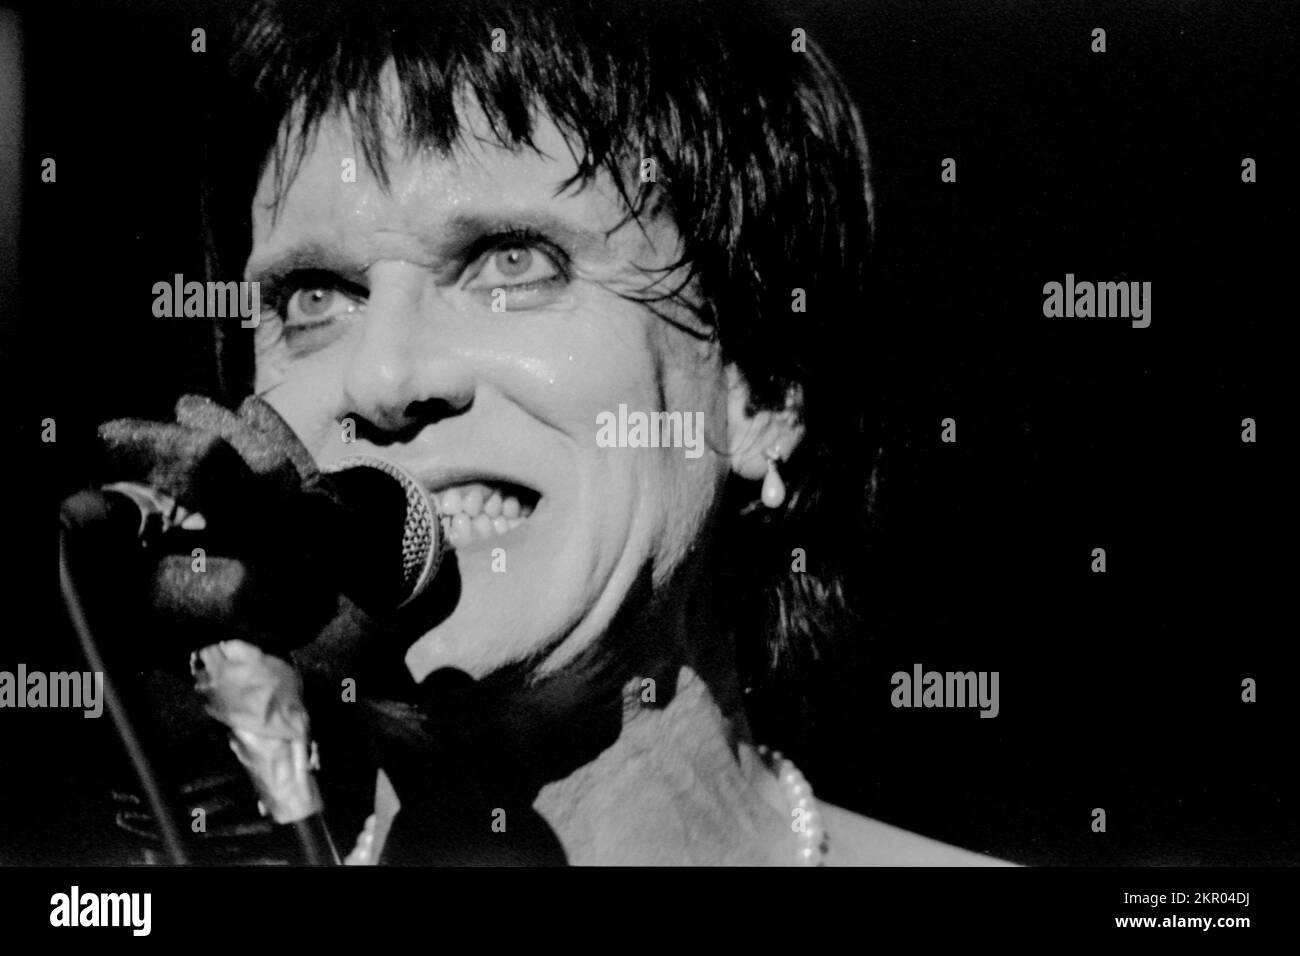 The Cramps live en concert en France - Lux Interior, chanteur des Cramps au Tamaris Rock Festival 1992 Banque D'Images